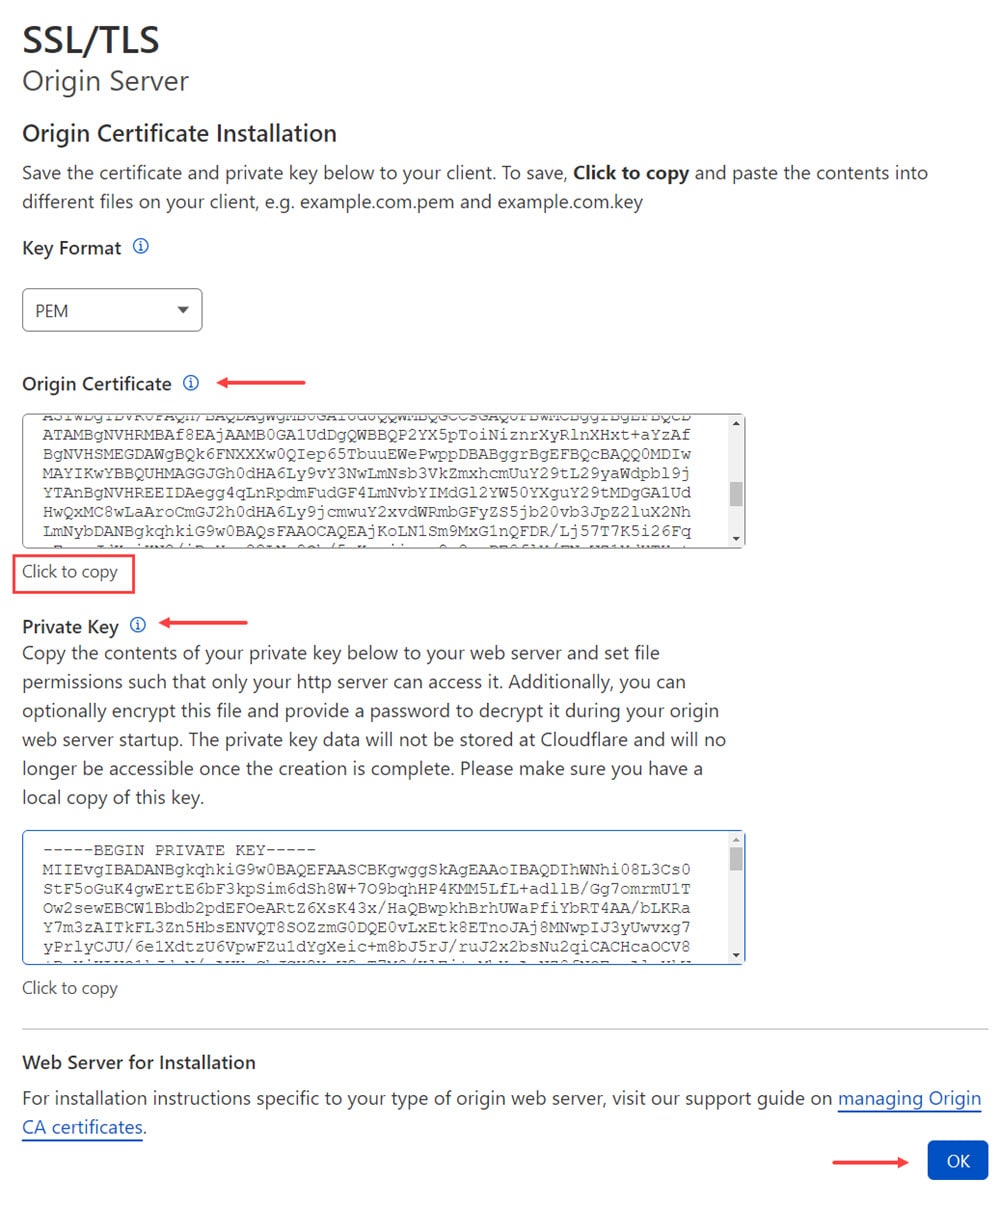 کدگذاری Origin Certificate و کلید برای فعالسازی تنظیمات SSl در کلودفلر